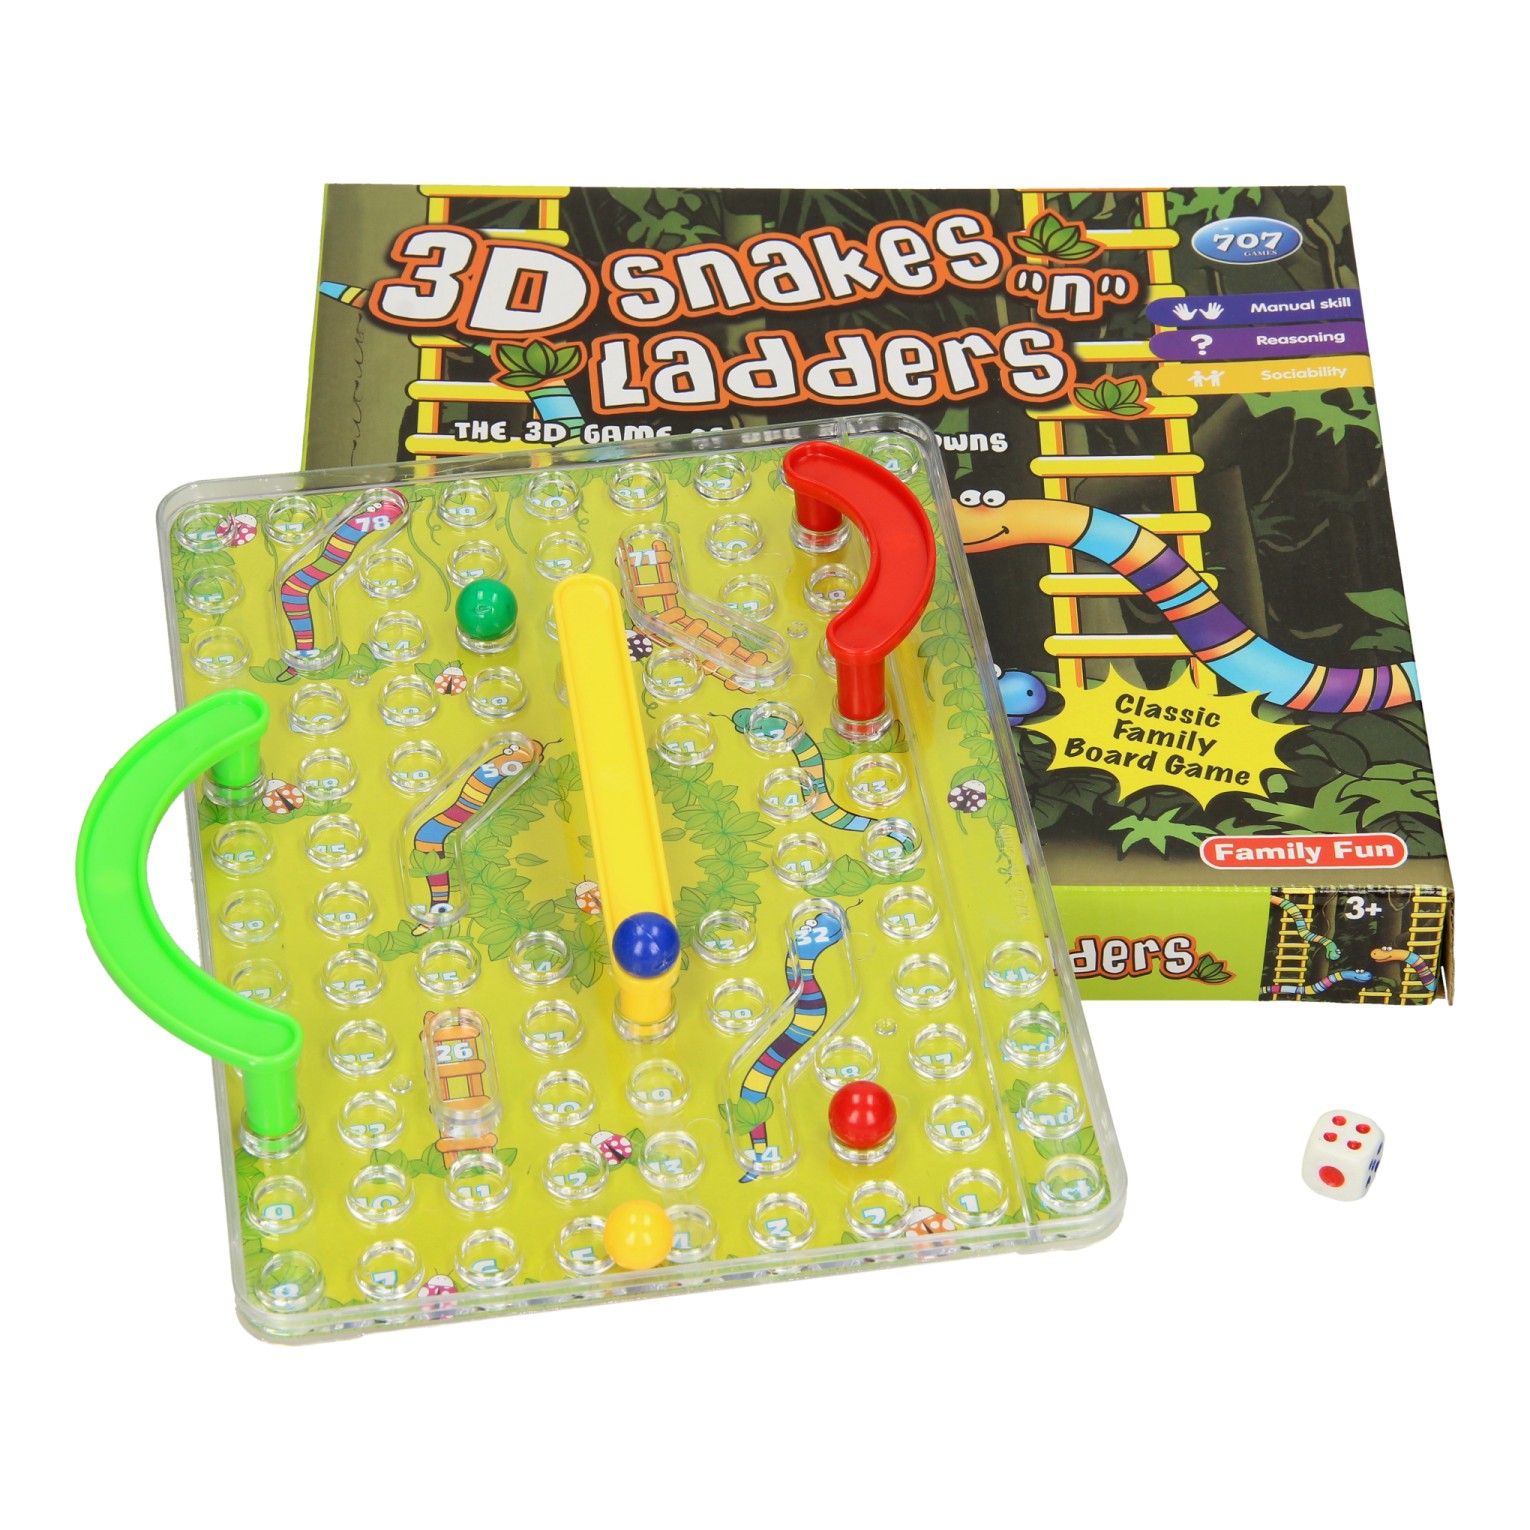 Slangen & Ladderspel 3D